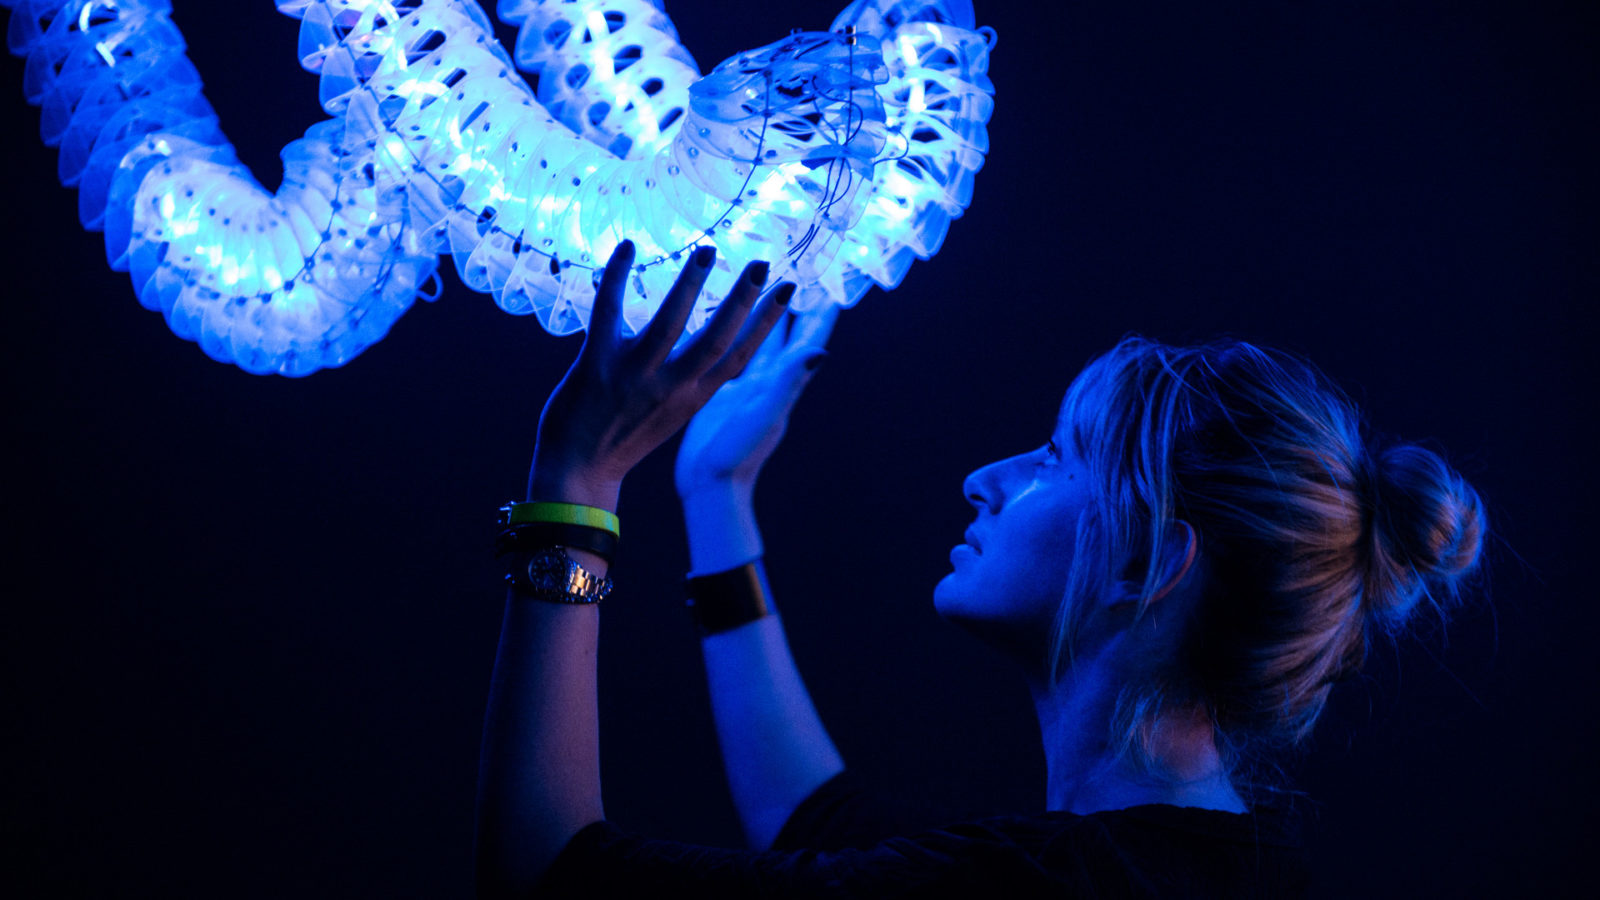 Eine Frau wird von blauen Licht angestrahlt, während sie mit ihren Händen ein Ausstellungsstück berührt.